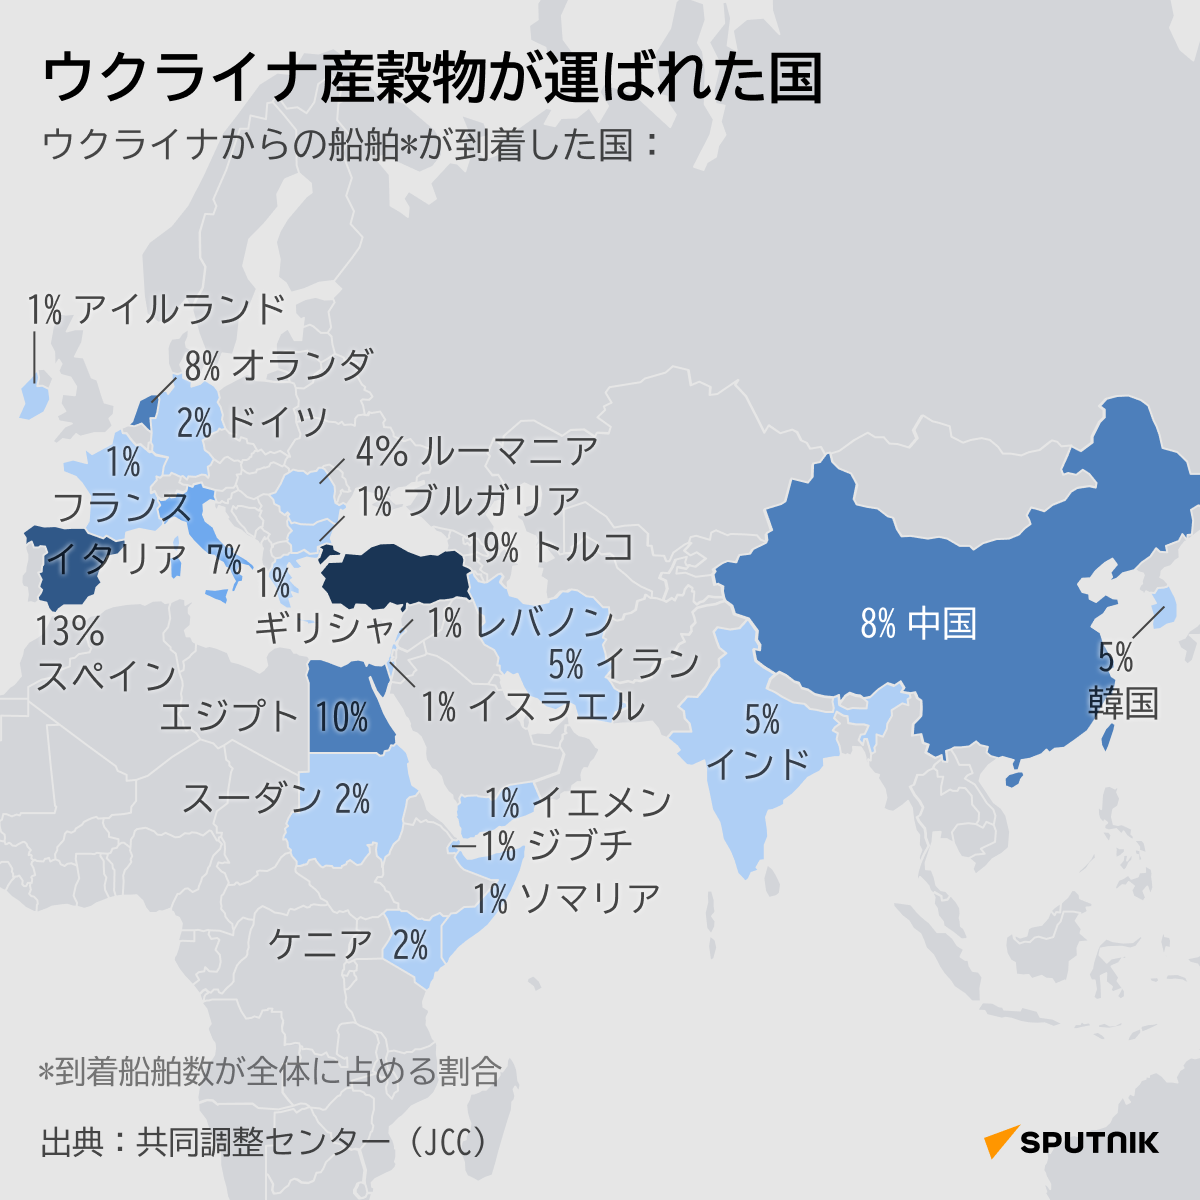 ウクライナ産穀物が運ばれた国 1 - Sputnik 日本